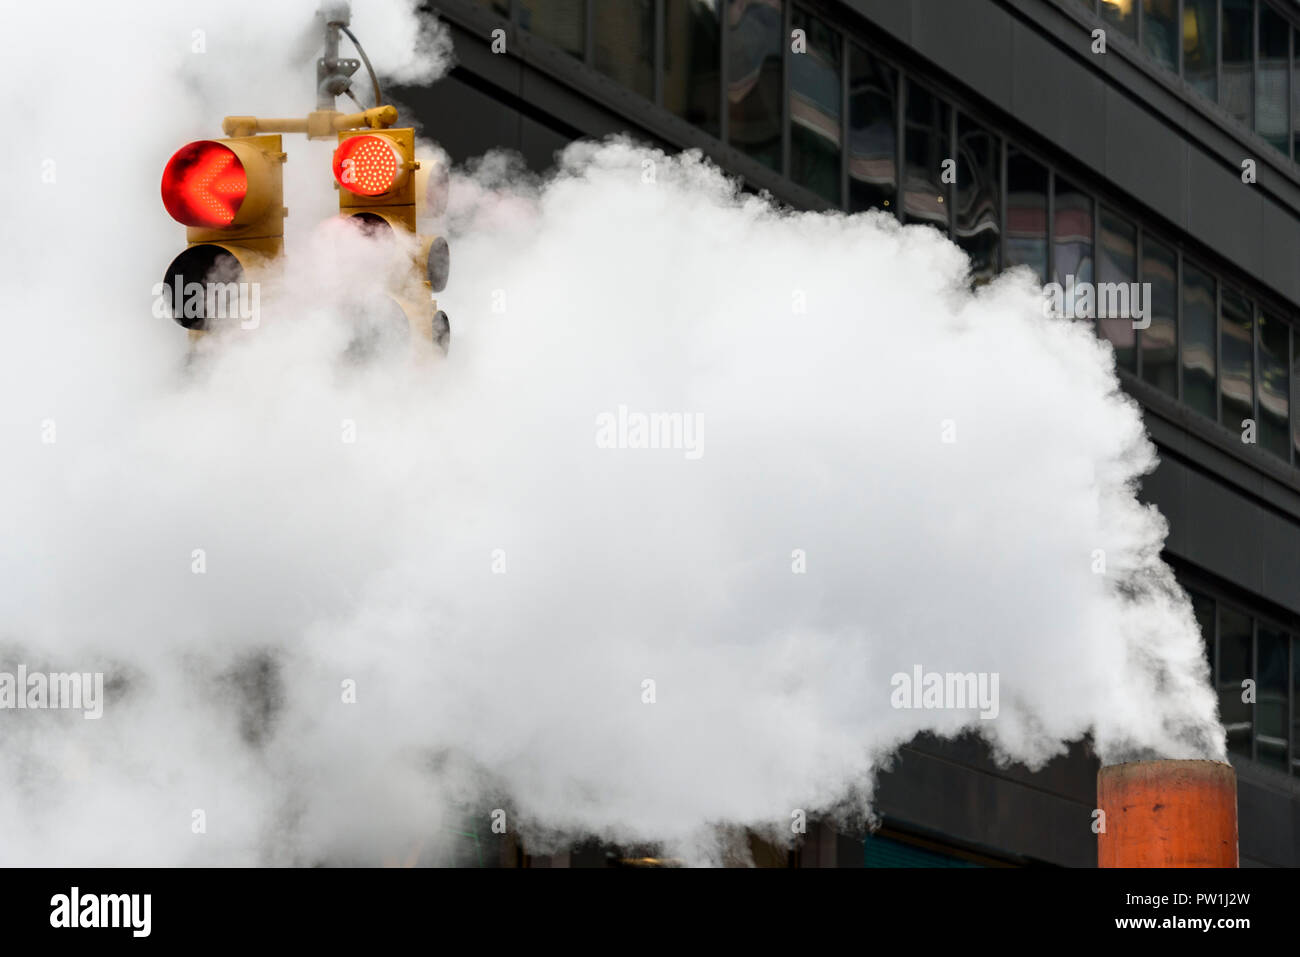 10-2018 Manhattan, New York. La fuoriuscita di vapore da una ventola di raffreddamento in senso opposto e si oscurano le luci del traffico. Foto: © Simon Grosset Foto Stock